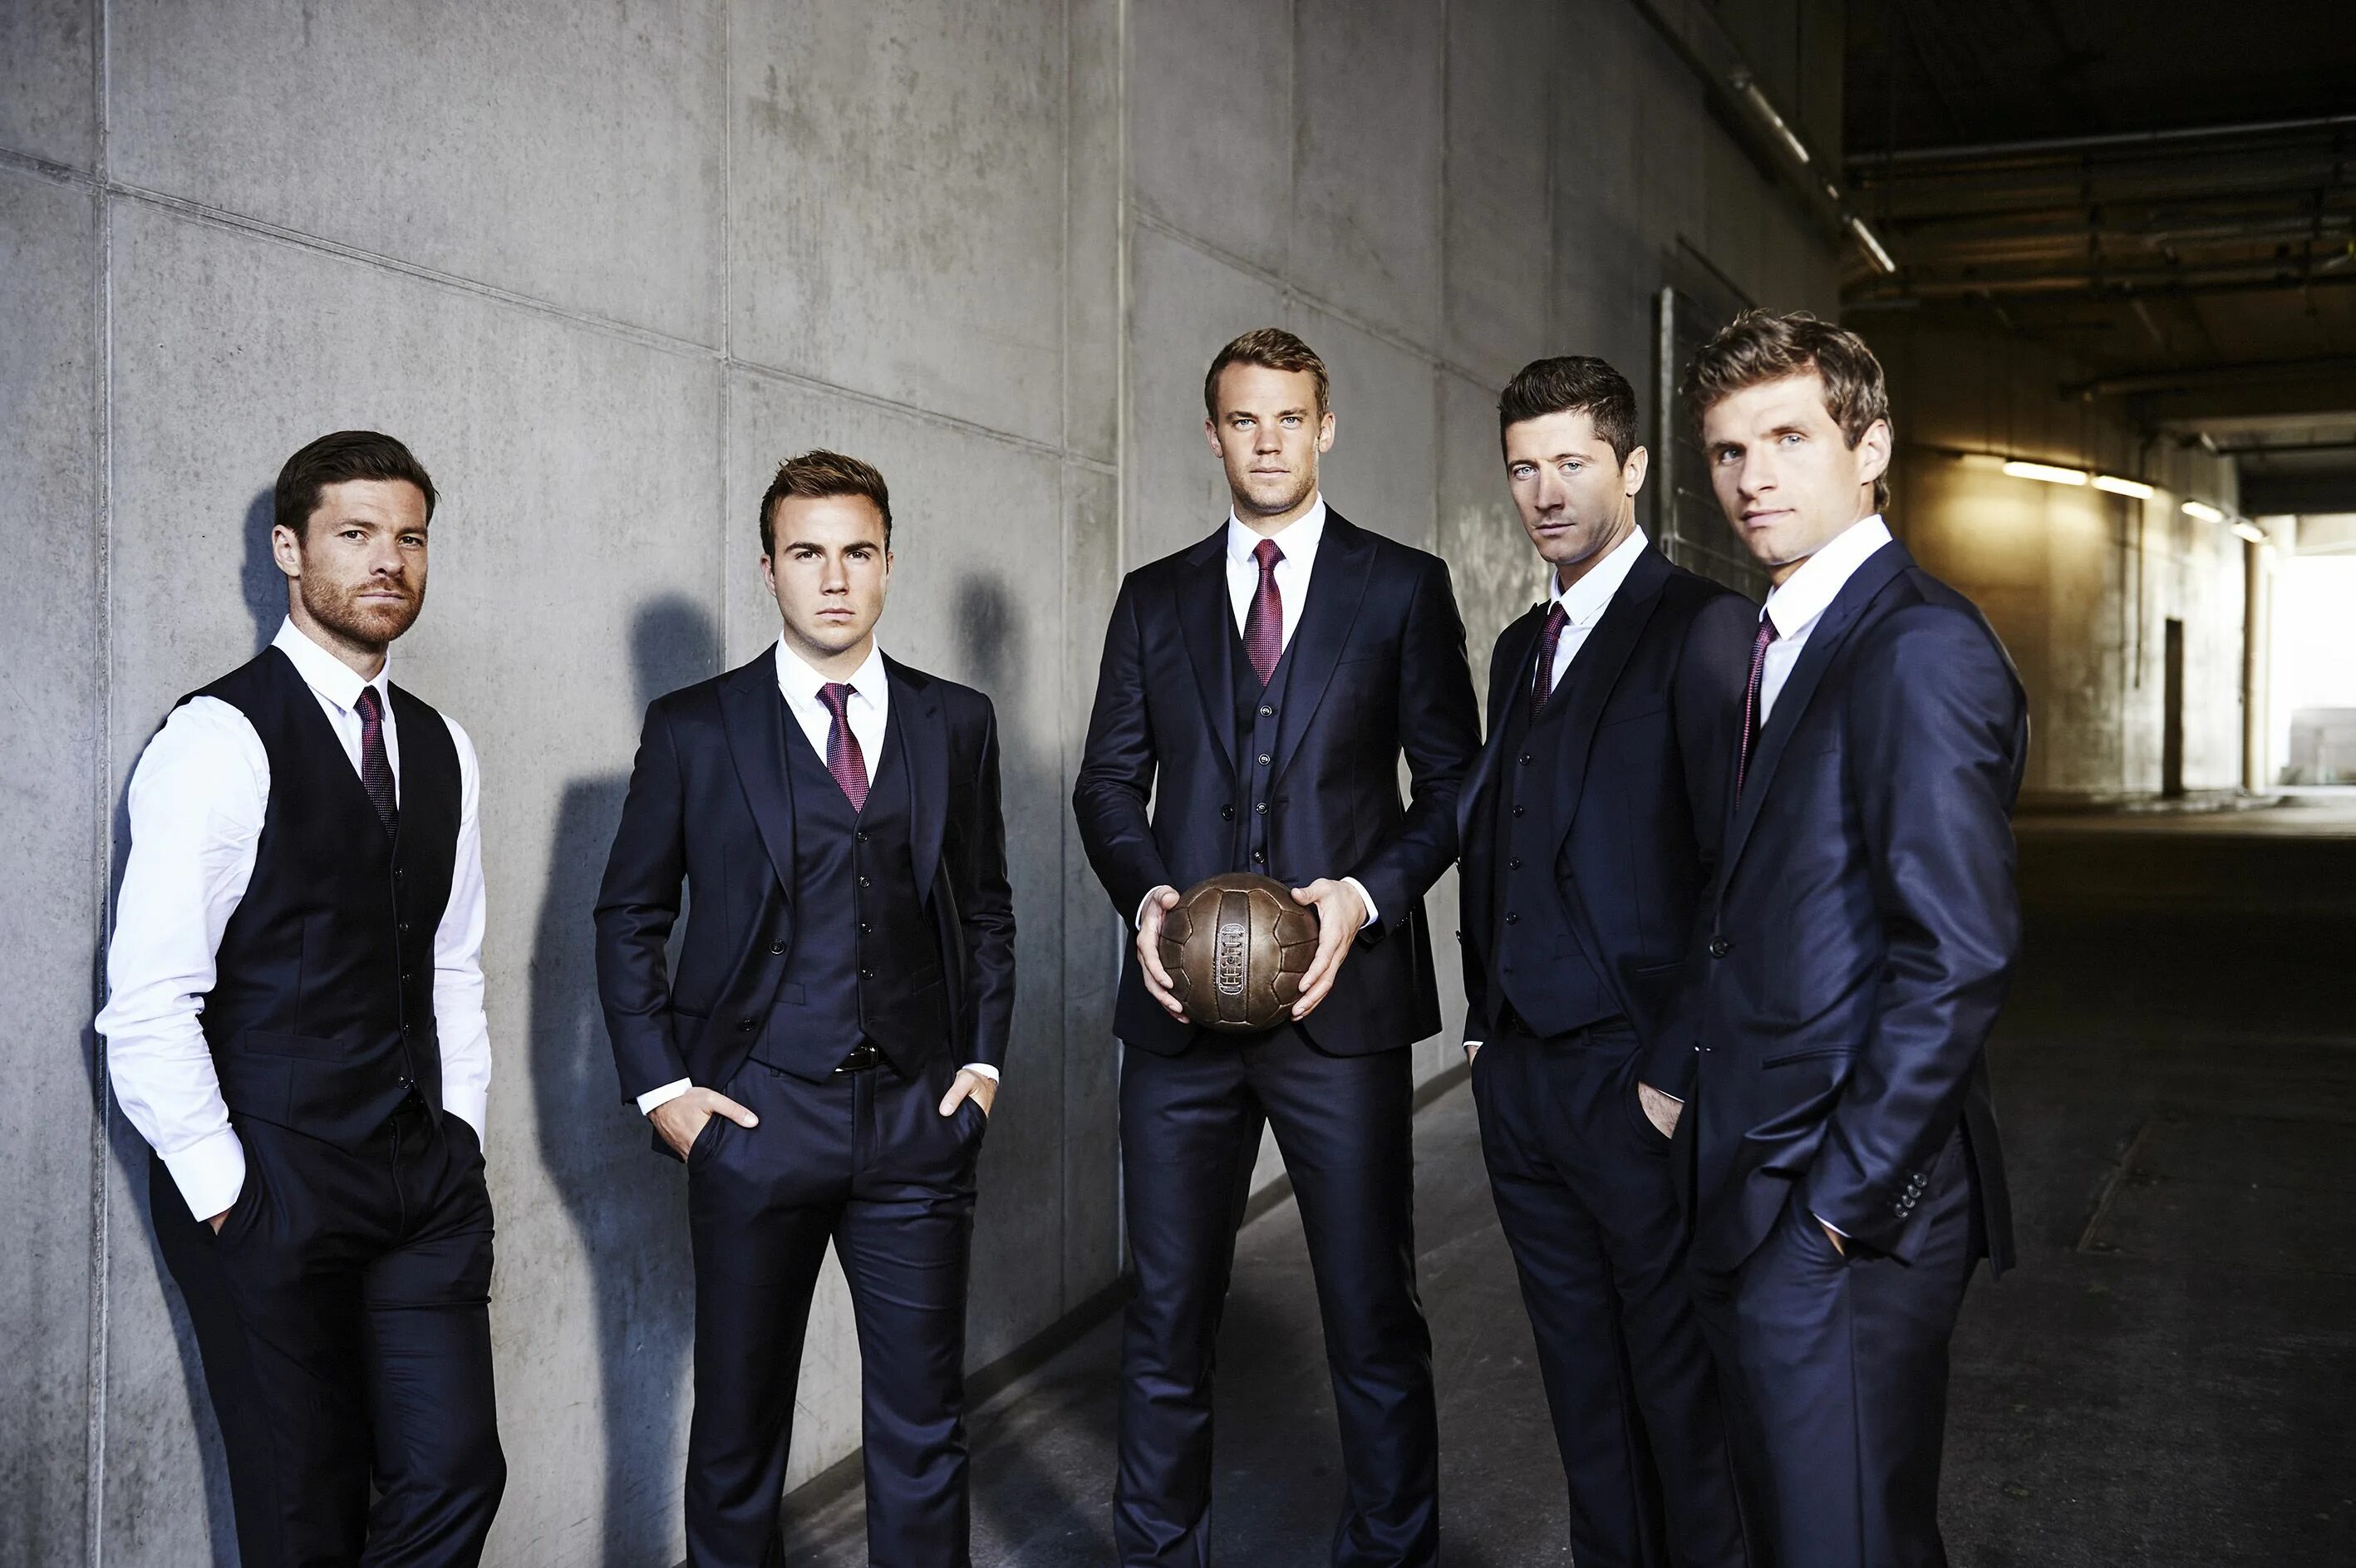 Про 5 мужчин. Несколько мужчин в костюмах. Футболисты в костюмах. Группа мужчин в костюмах. Мужской коллектив.